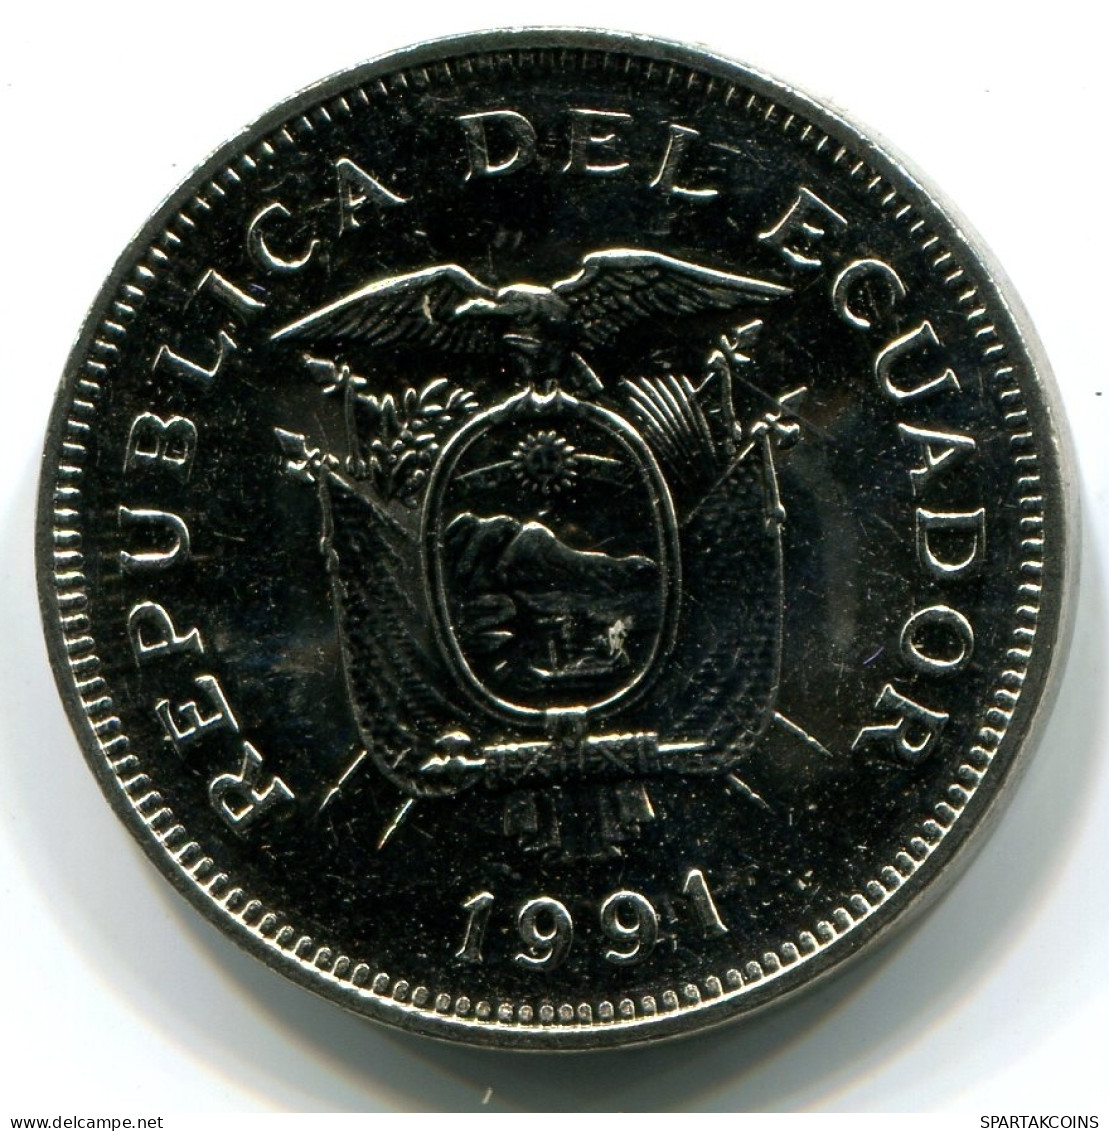 20 SUCRE 1991 ECUADOR UNC Moneda #W11023.E - Ecuador